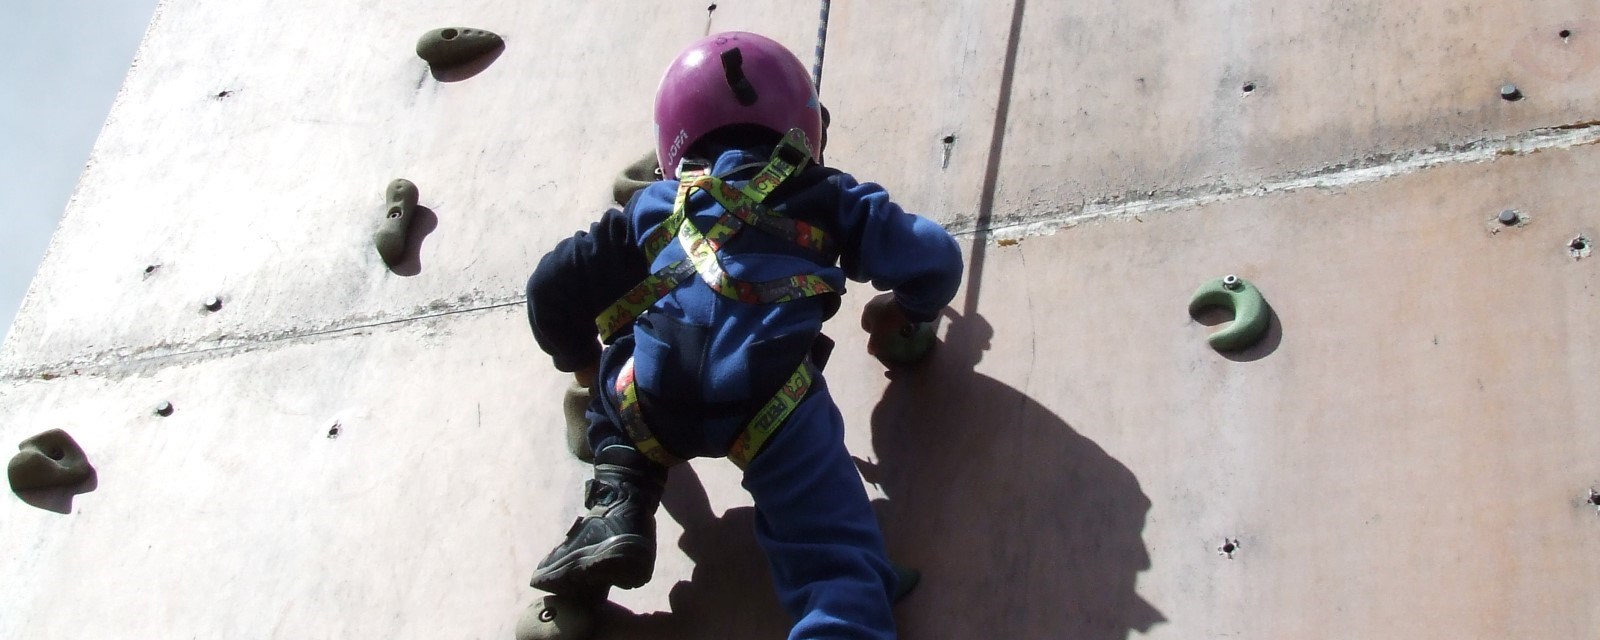 Et barn i klatreveggen med hjelm på hodet 